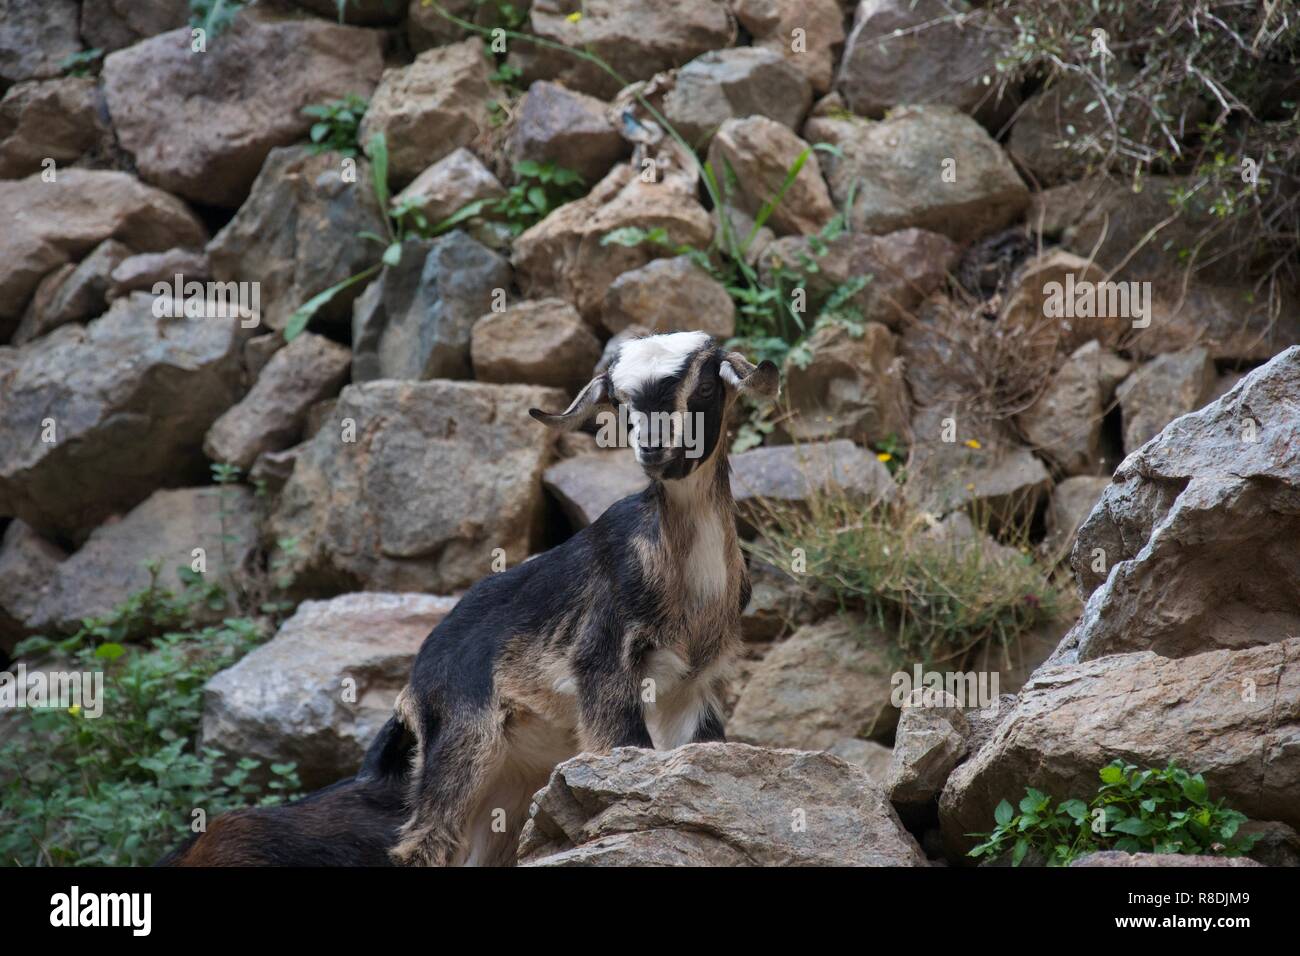 Einen kleinen schwarzen, braunen und cremefarbenen Ziege steht auf einem felsigen Weg, Pausen und schaut in Richtung der Kamera Stockfoto